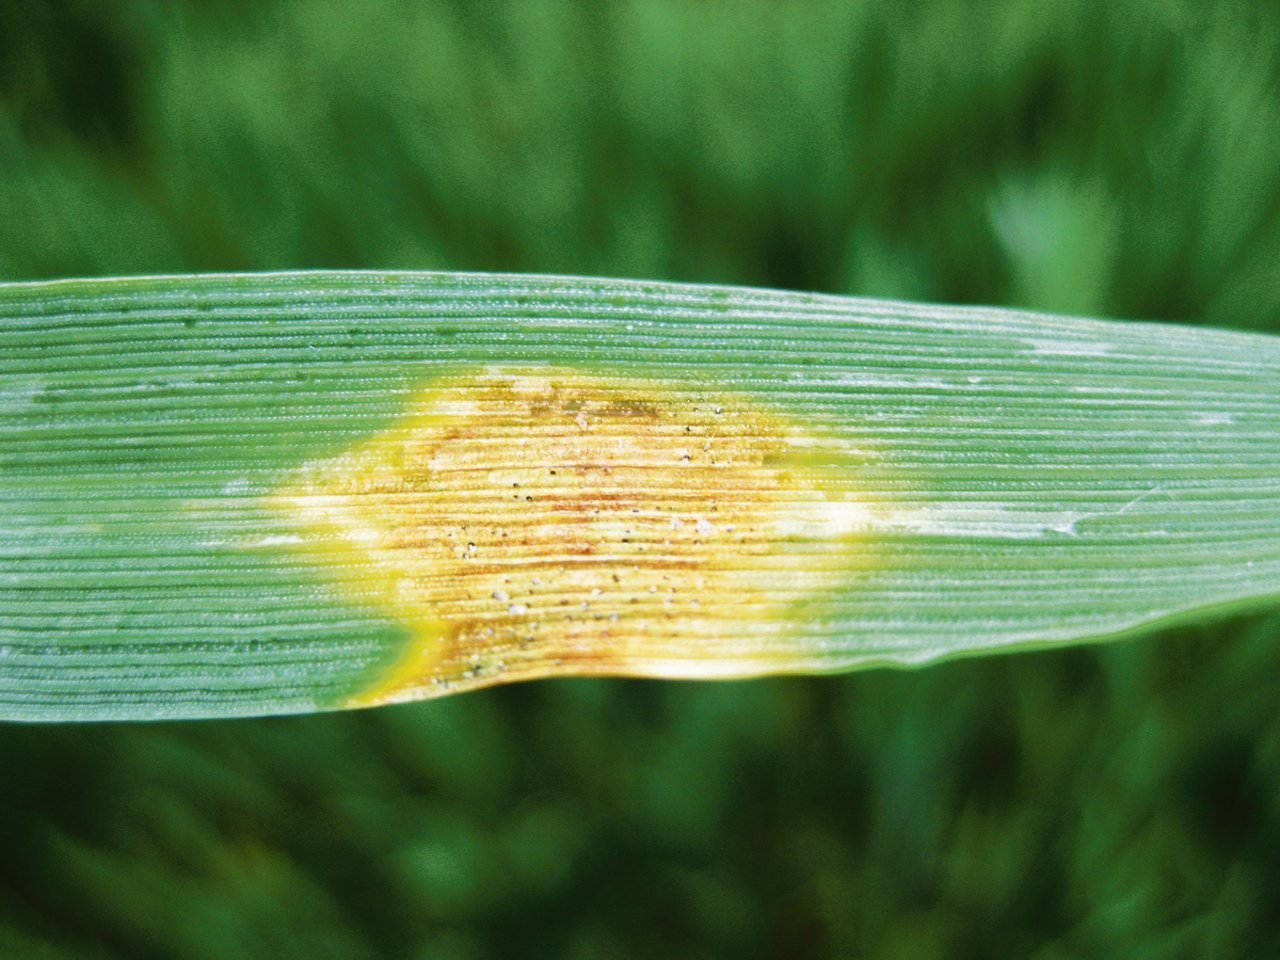 Septoria tritici am Weizen wird durch Nässe begünstigt. (Bild zVg)